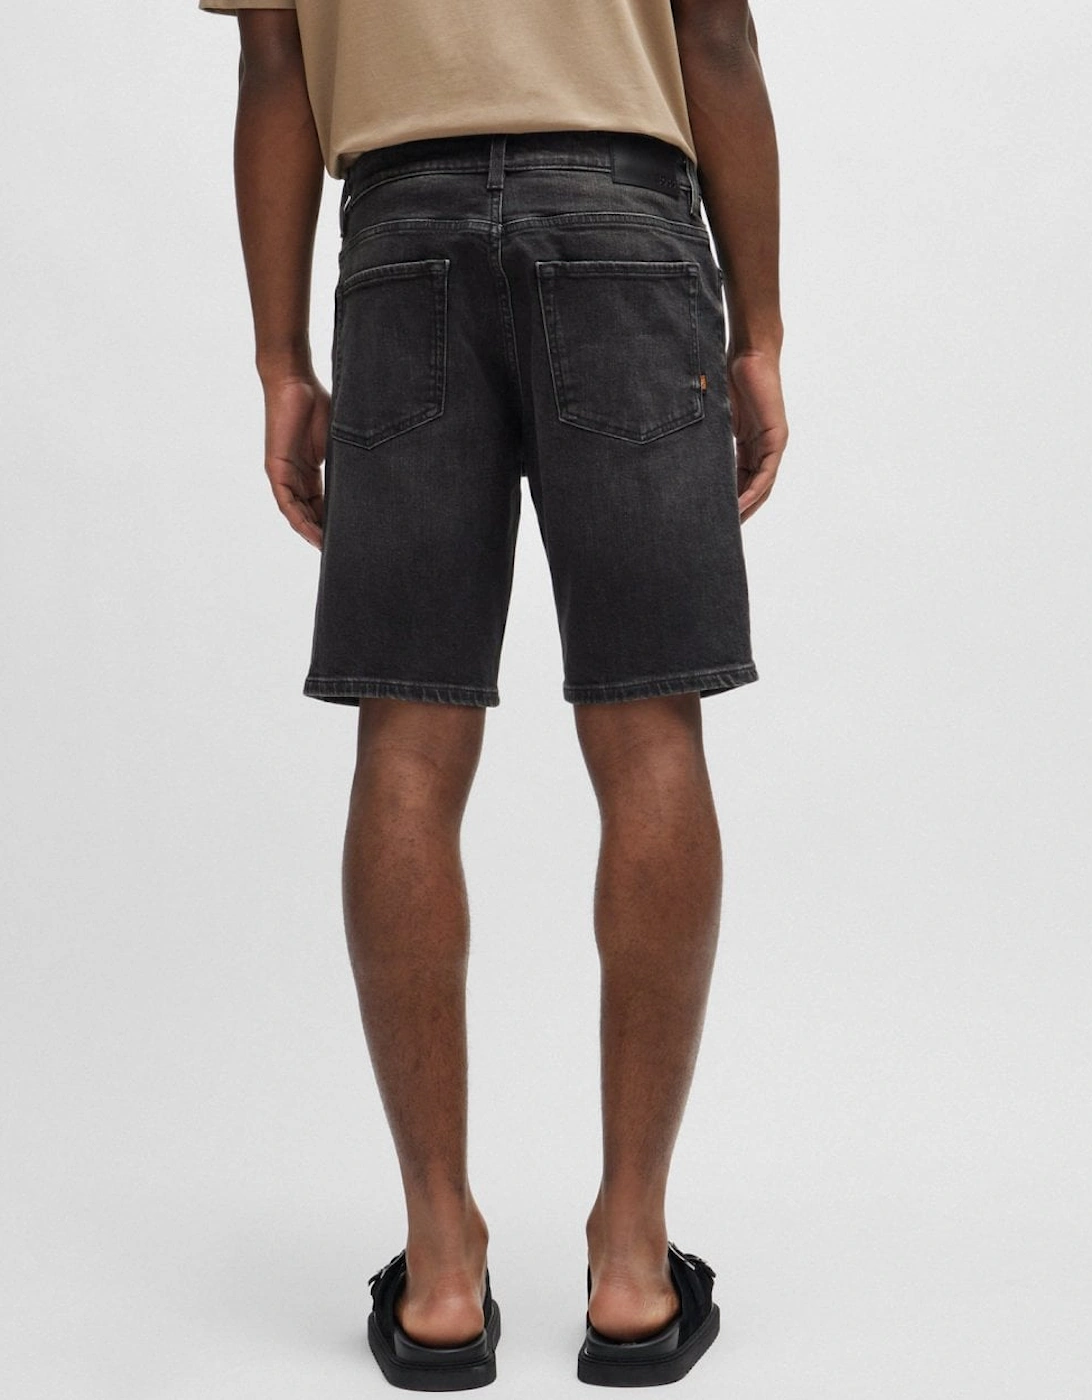 Orange Re.Maine Mens Regular Fit Shorts in Dark Grey Comfort-Stretch Denim